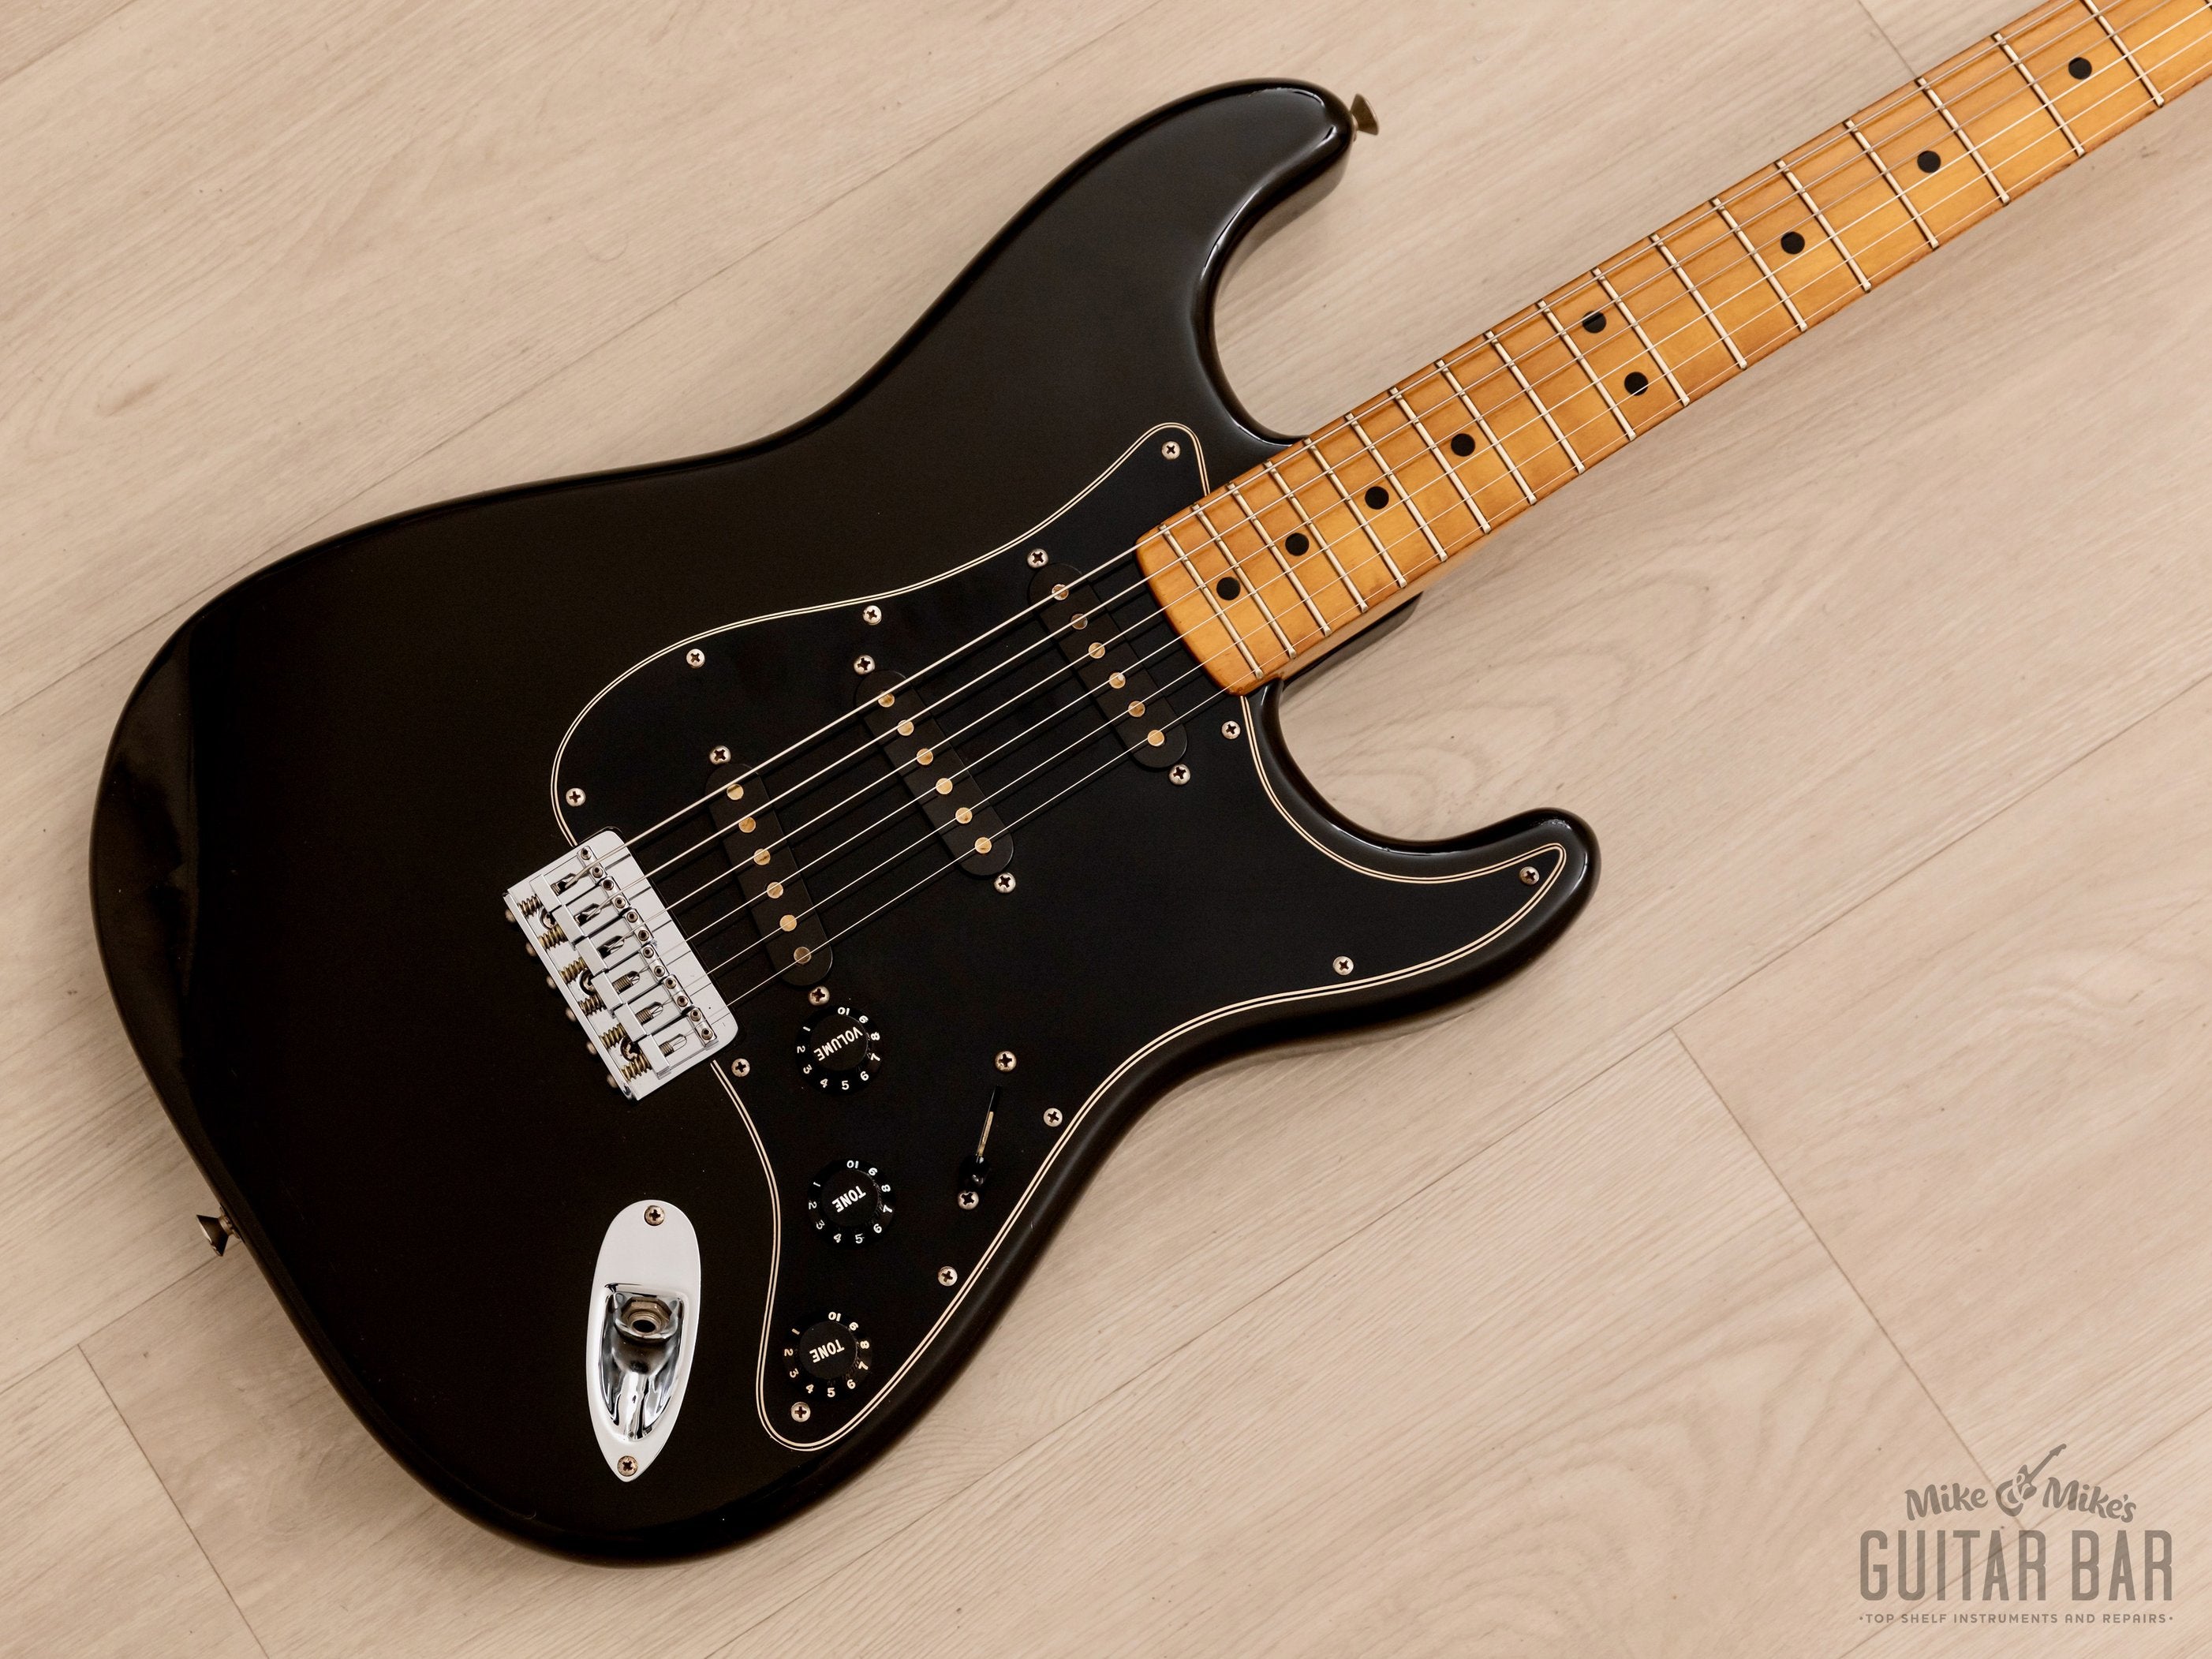 1976 Fender Stratocaster Hardtail Vintage Guitar Black, 100